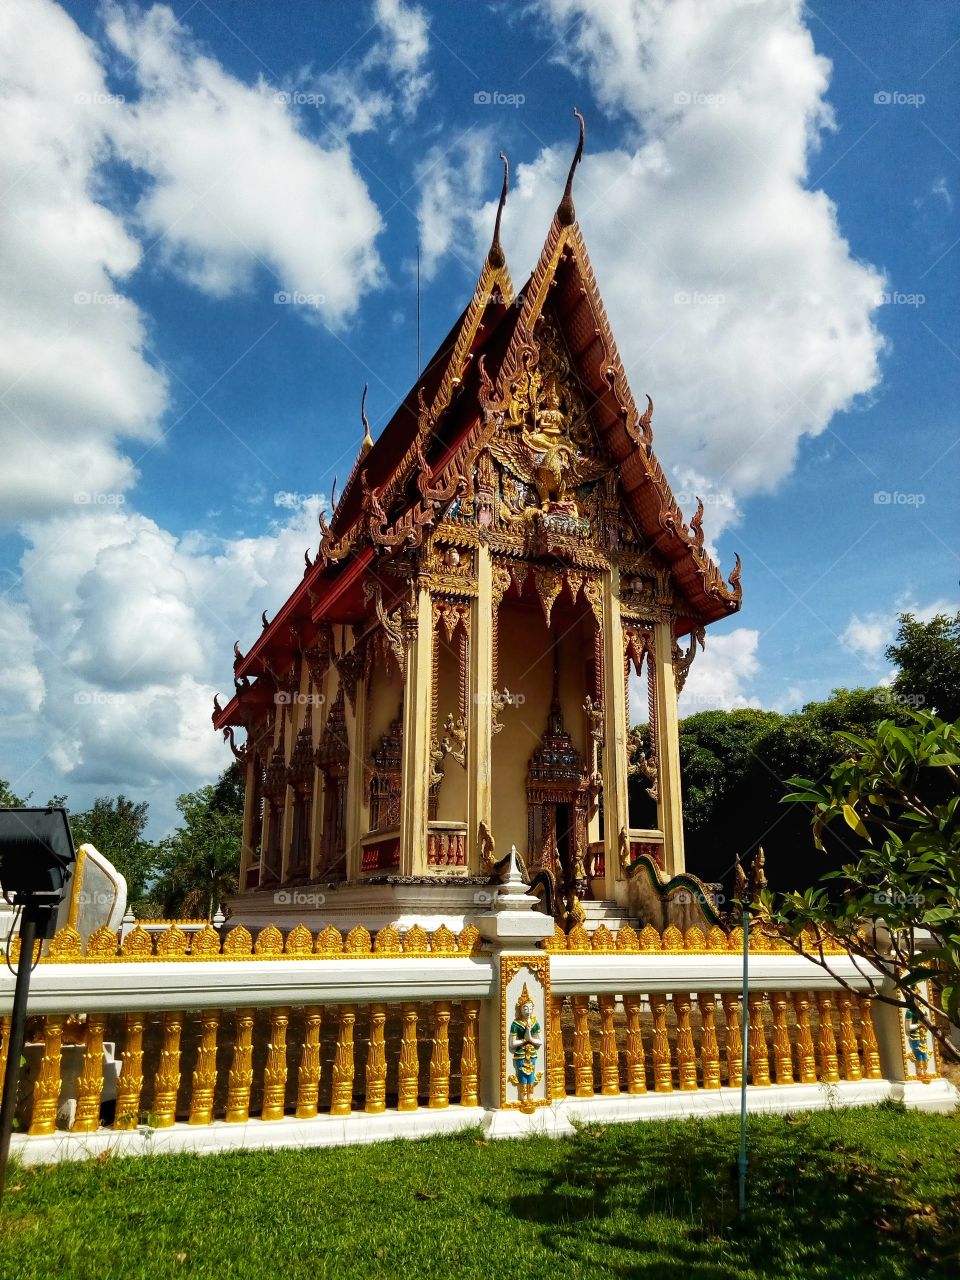 Temple at Ubon Ratchathani, Thailand.